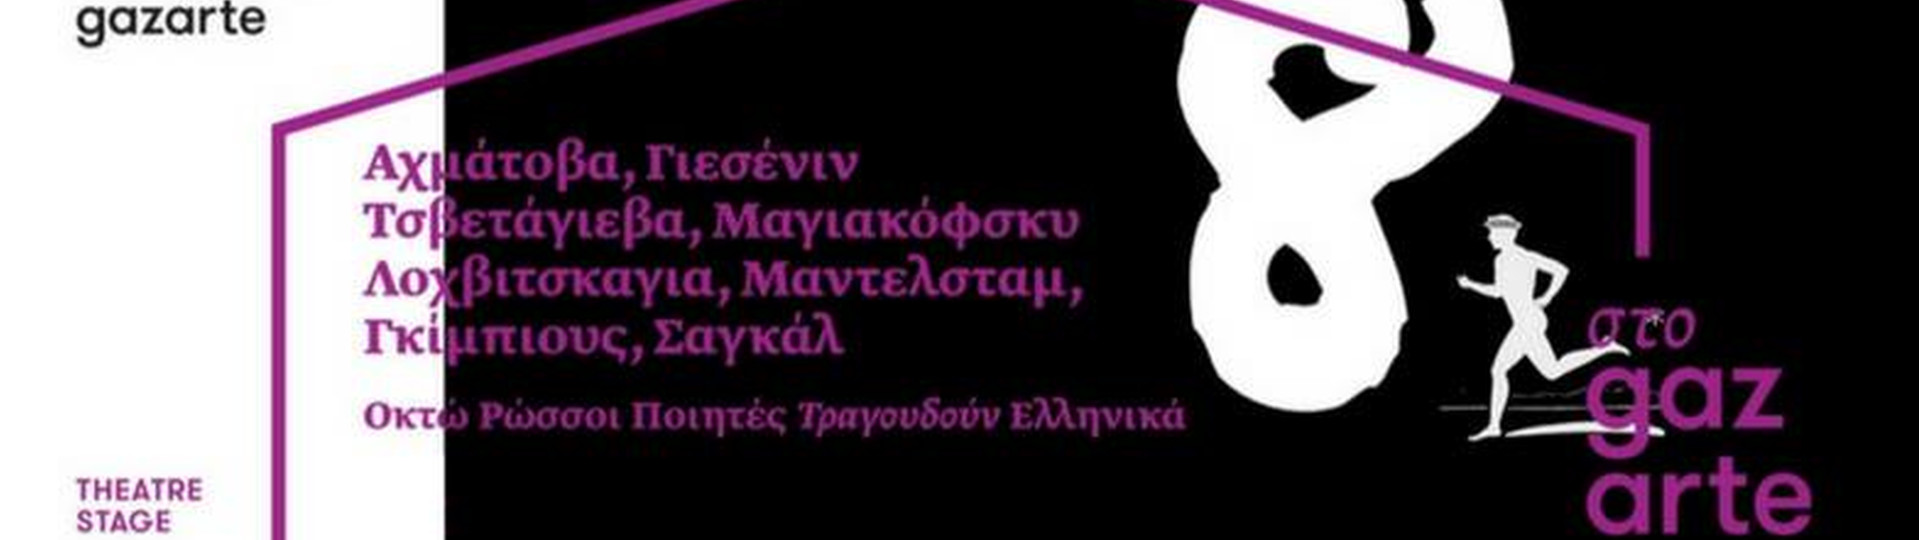 «8 Ρώσσοι ποιητές τραγουδούν Ελληνικά» στο Gazarte